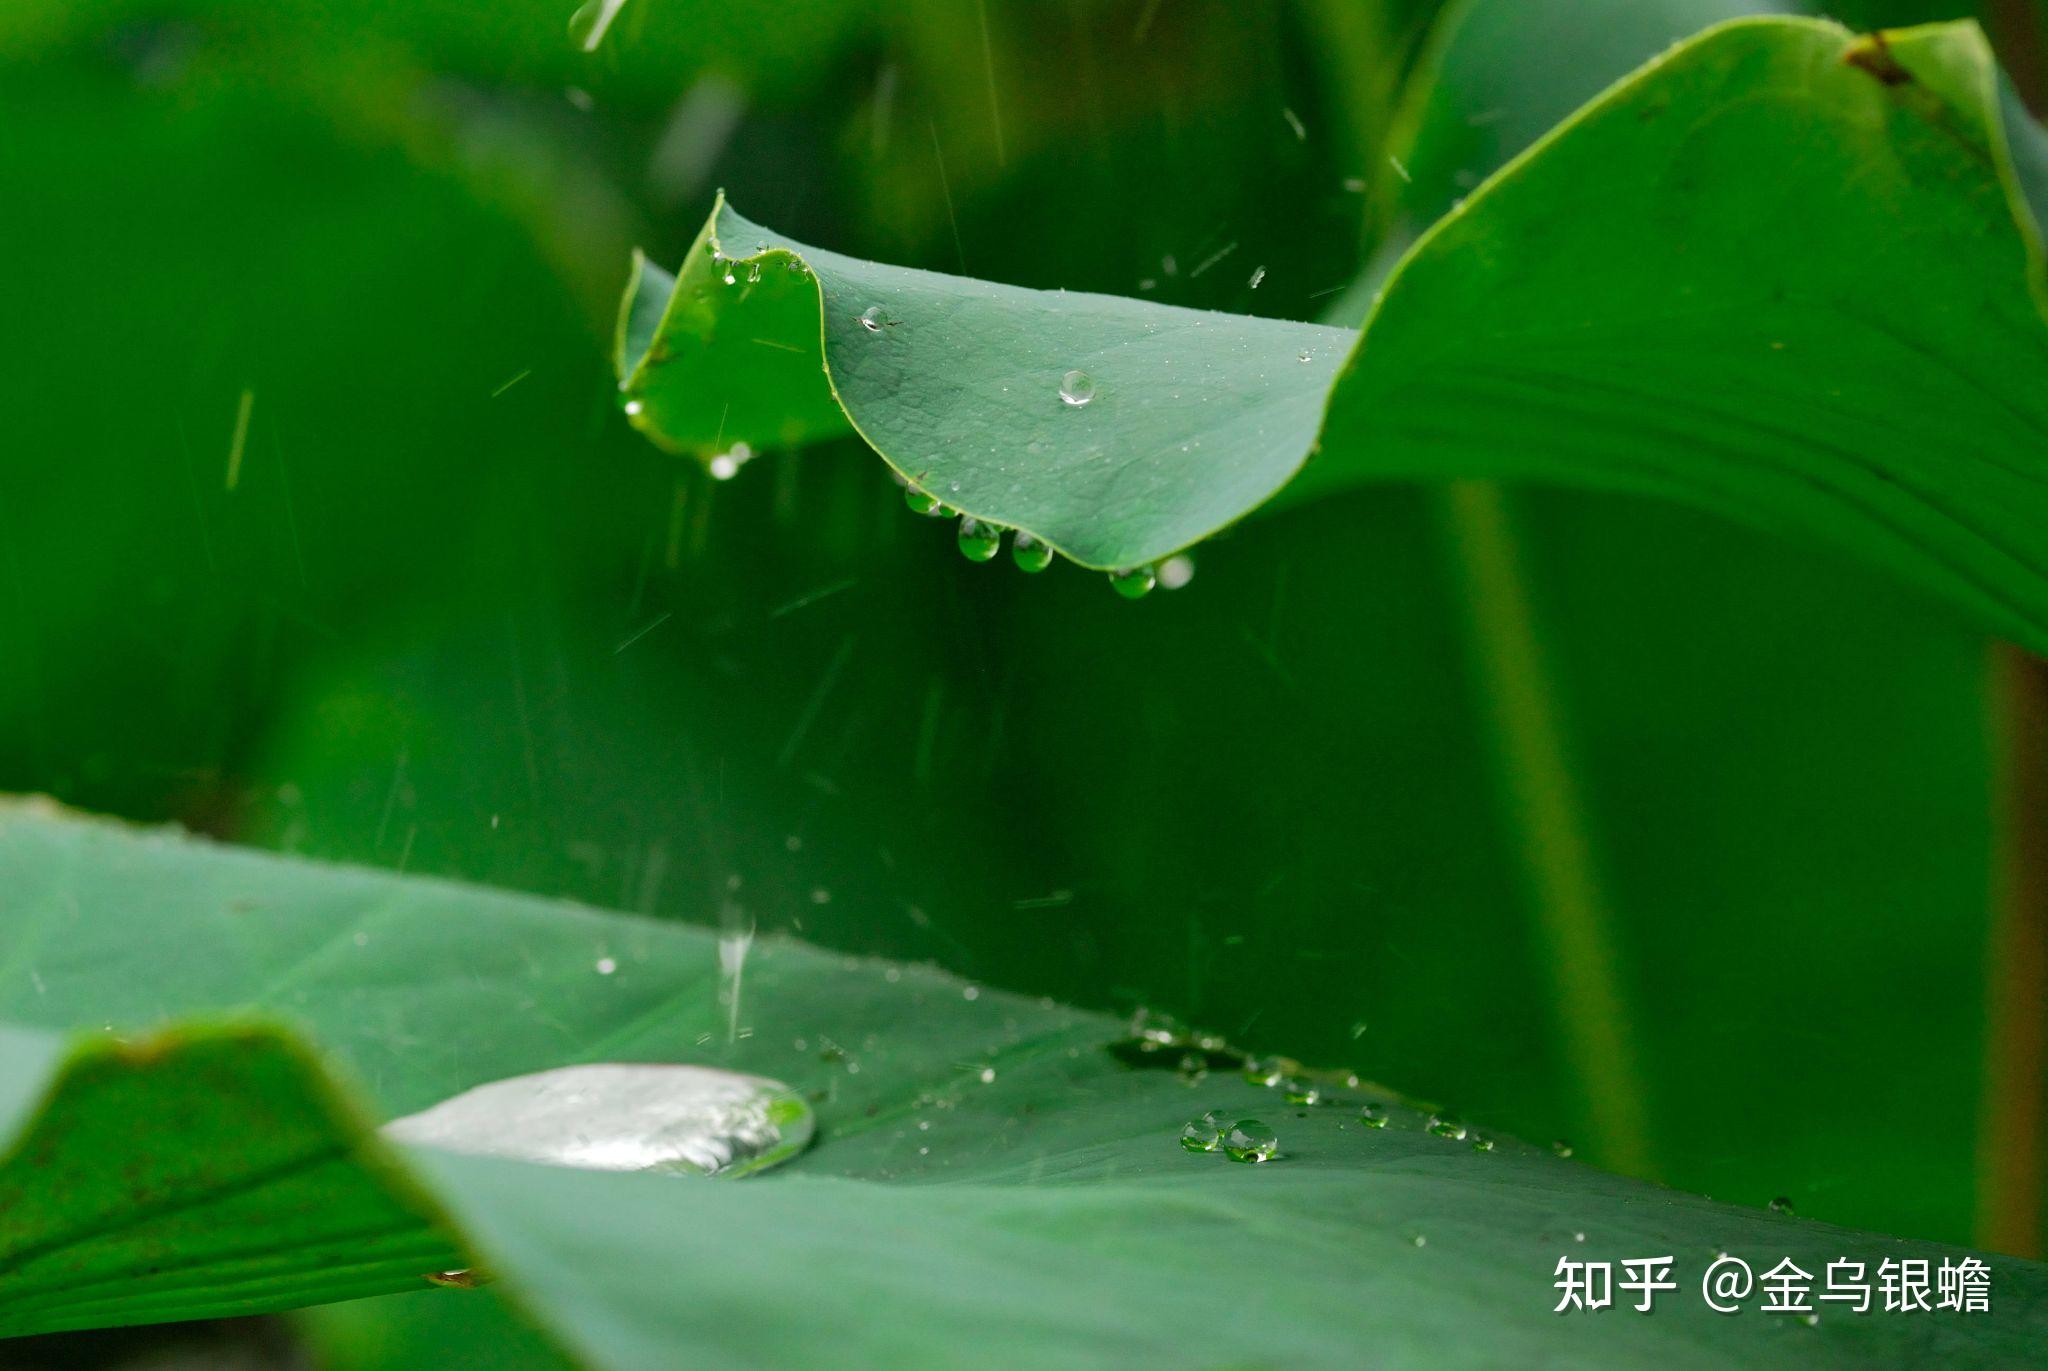 青春在雨中漫步 - 中国摄影出版传媒有限责任公司